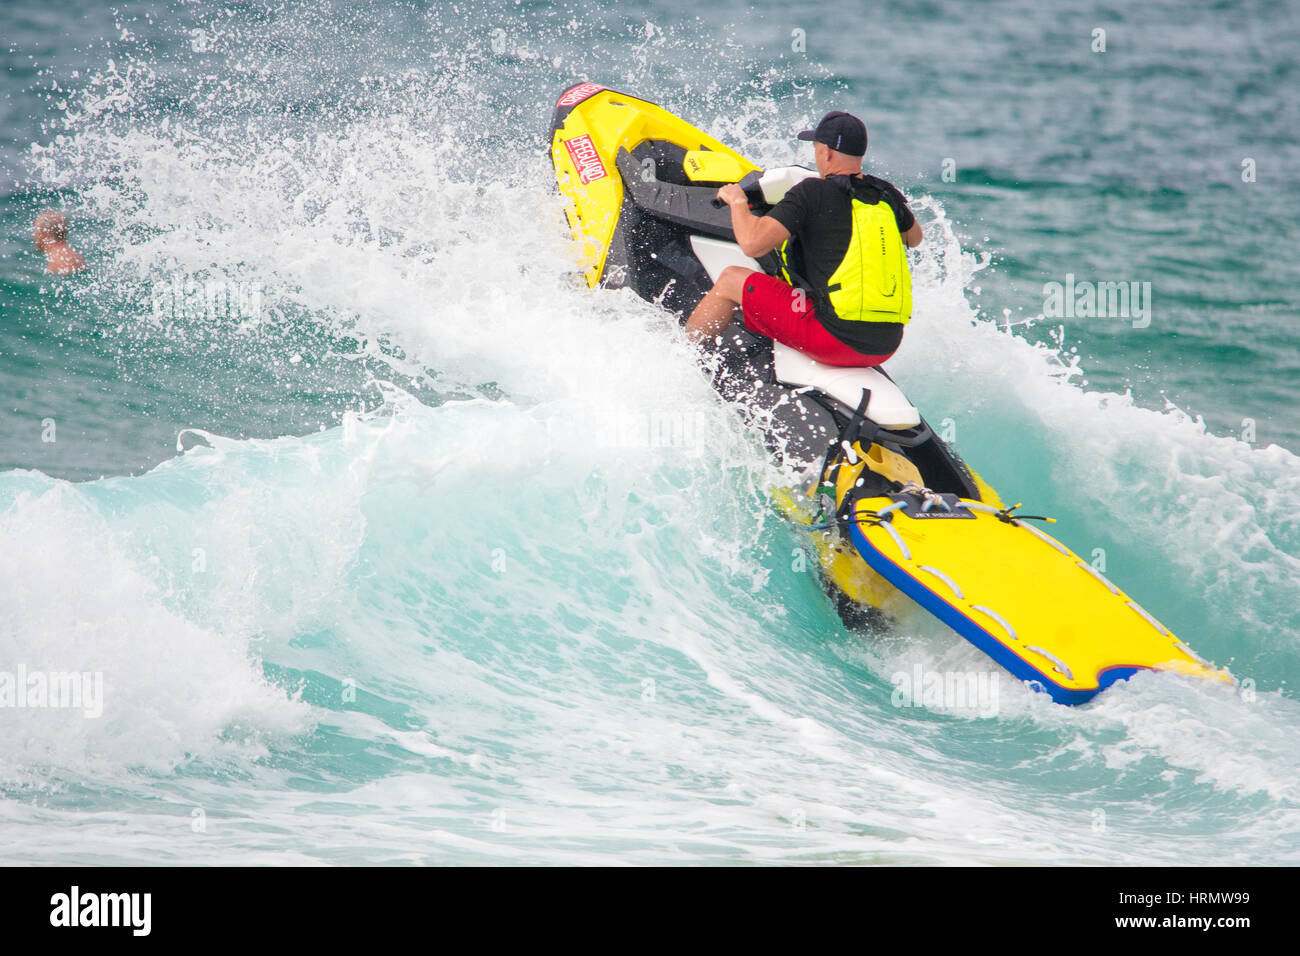 Sydney, Australie - le 3 mars 2017 : Australian Open of Surfing Sports Événement à Manly Beach, Australie Doté d'Surf, BMX, patinage et la musique. Sur la photo est un Lifegurad patroling Surf Manly Beach comme la pluie par endroits. Credit : mjmediabox / Alamy Live News Banque D'Images